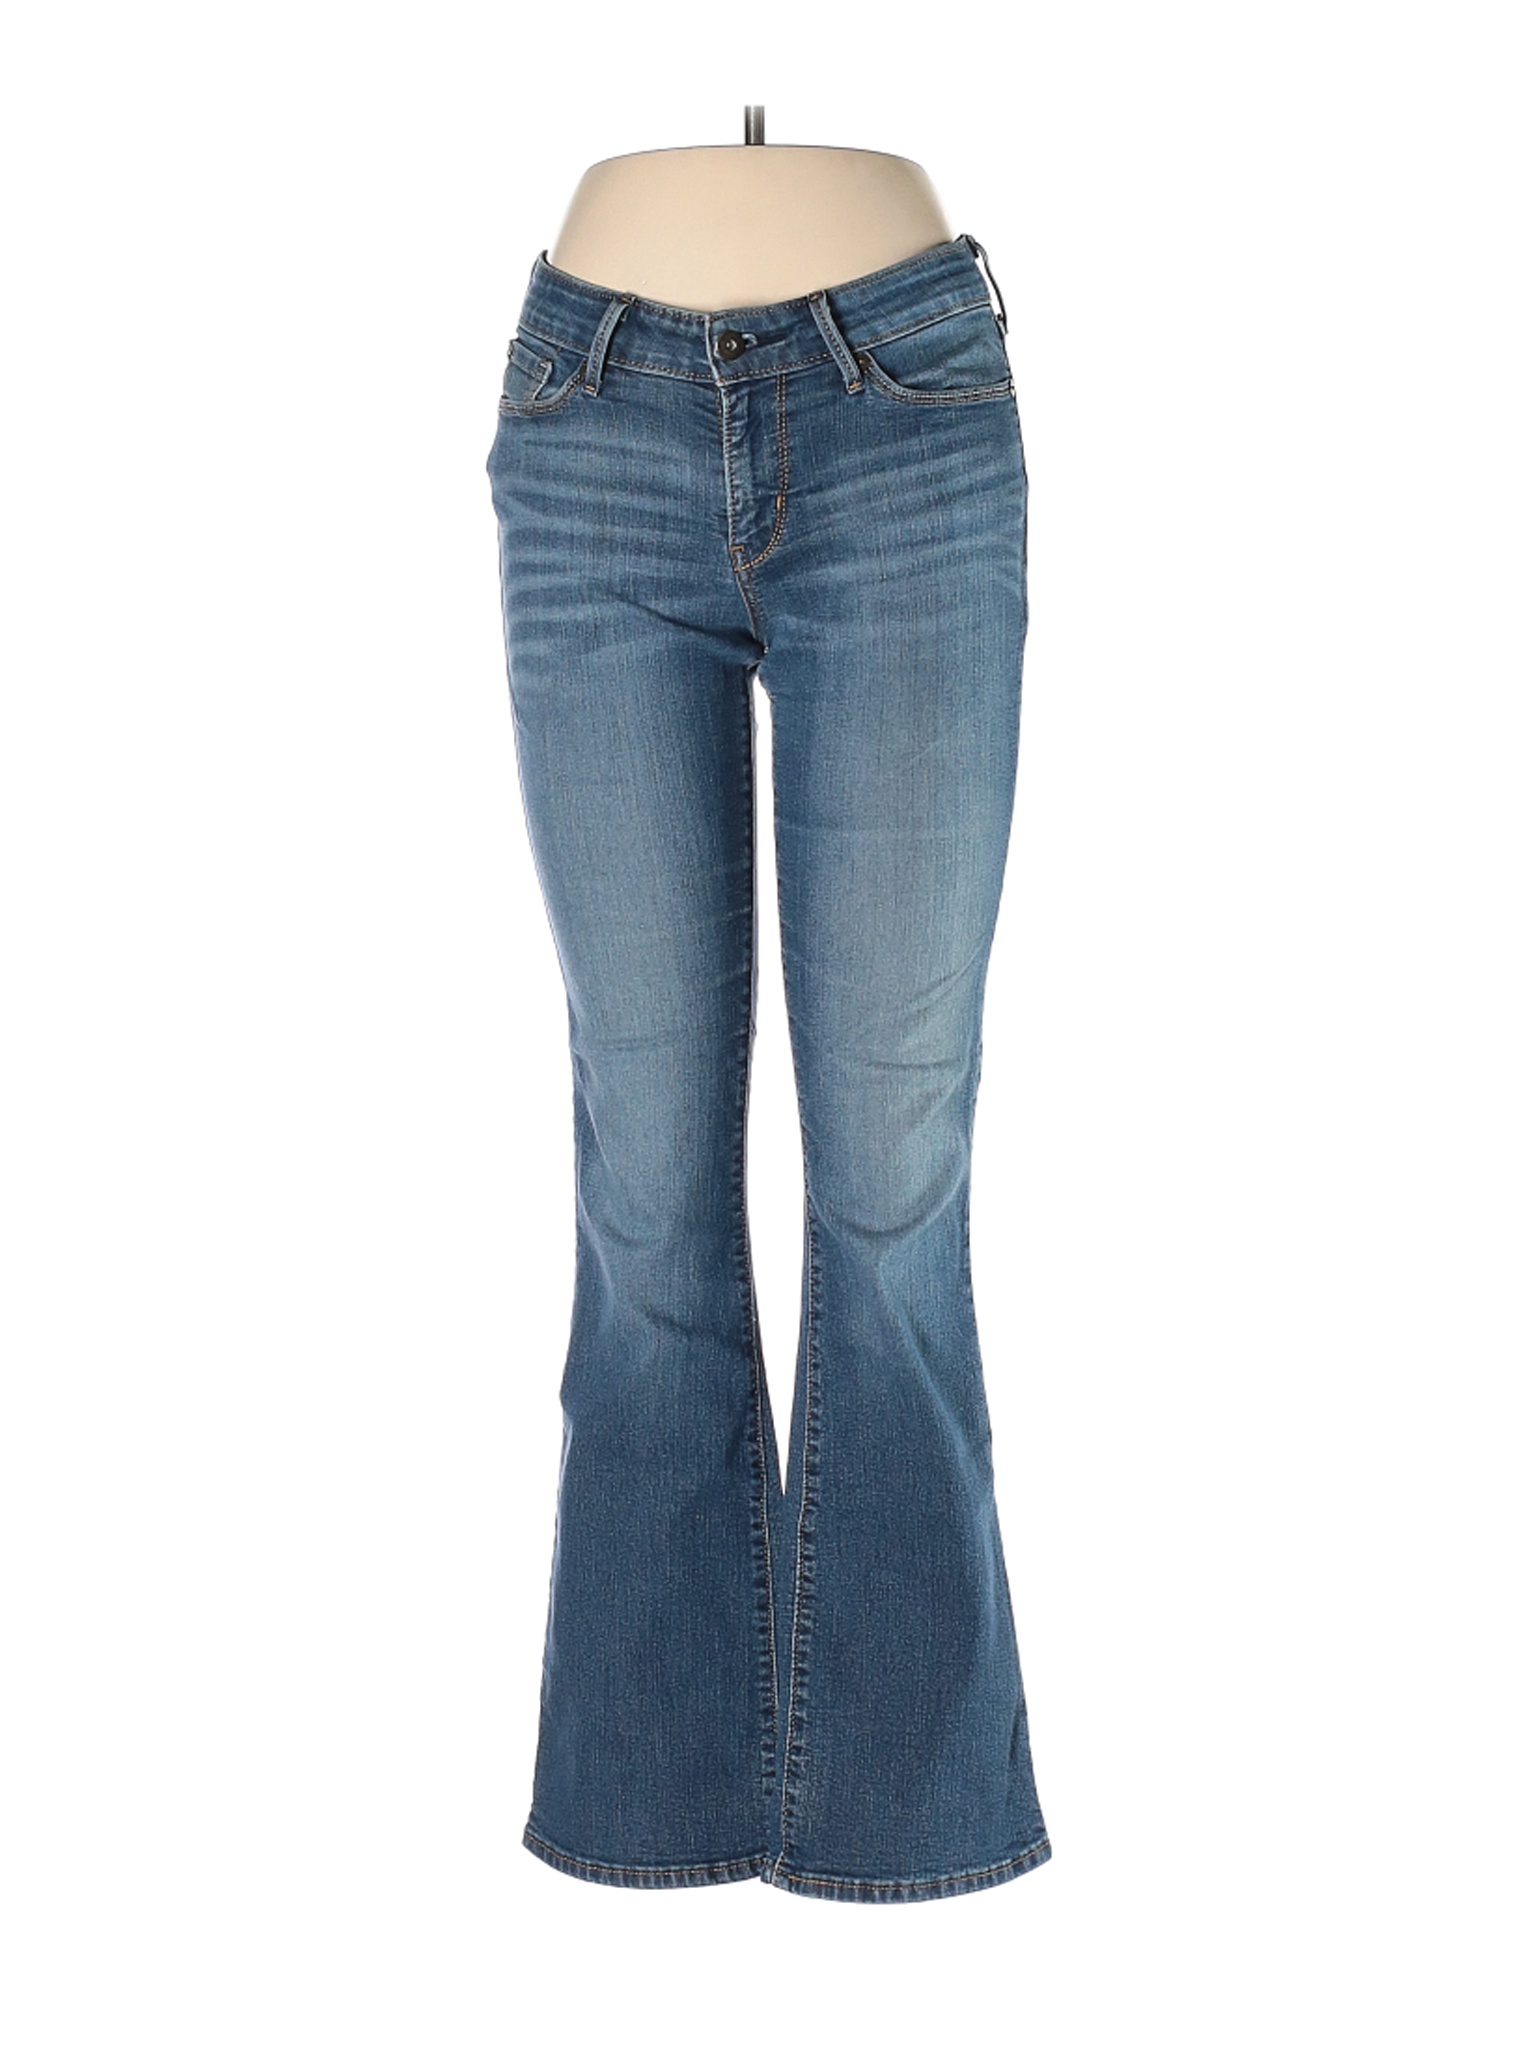 Denizen from Levi's Women Blue Jeans 6 | eBay